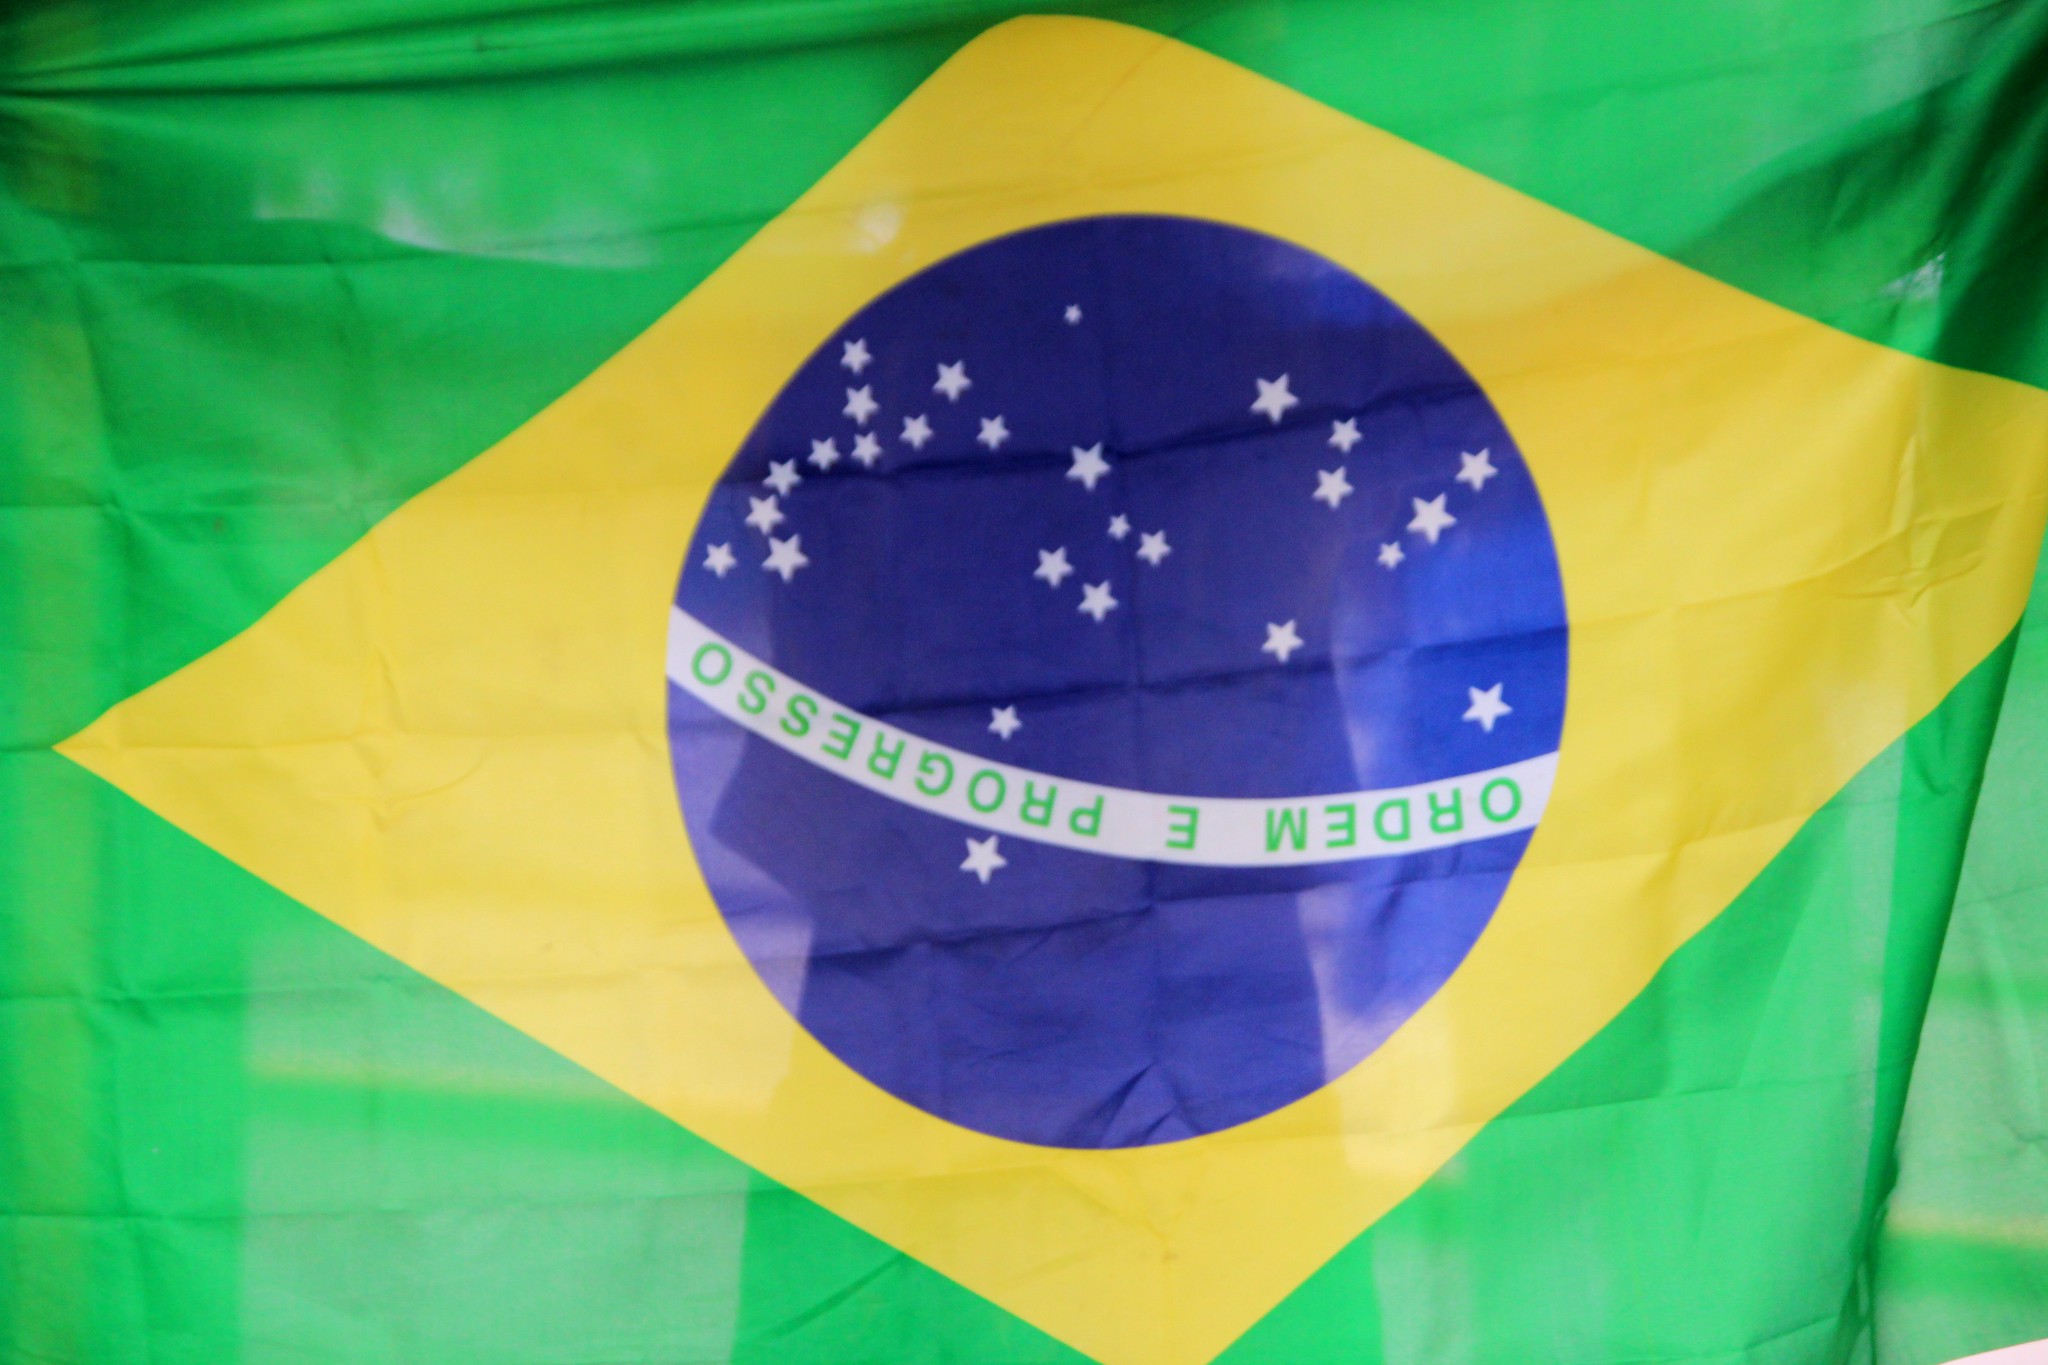 Apesar de ser pentacampeão, o Brasil na Copa do Mundo nem sempre foi imponente. Saiba quais foram as campanhas mais desastrosas.